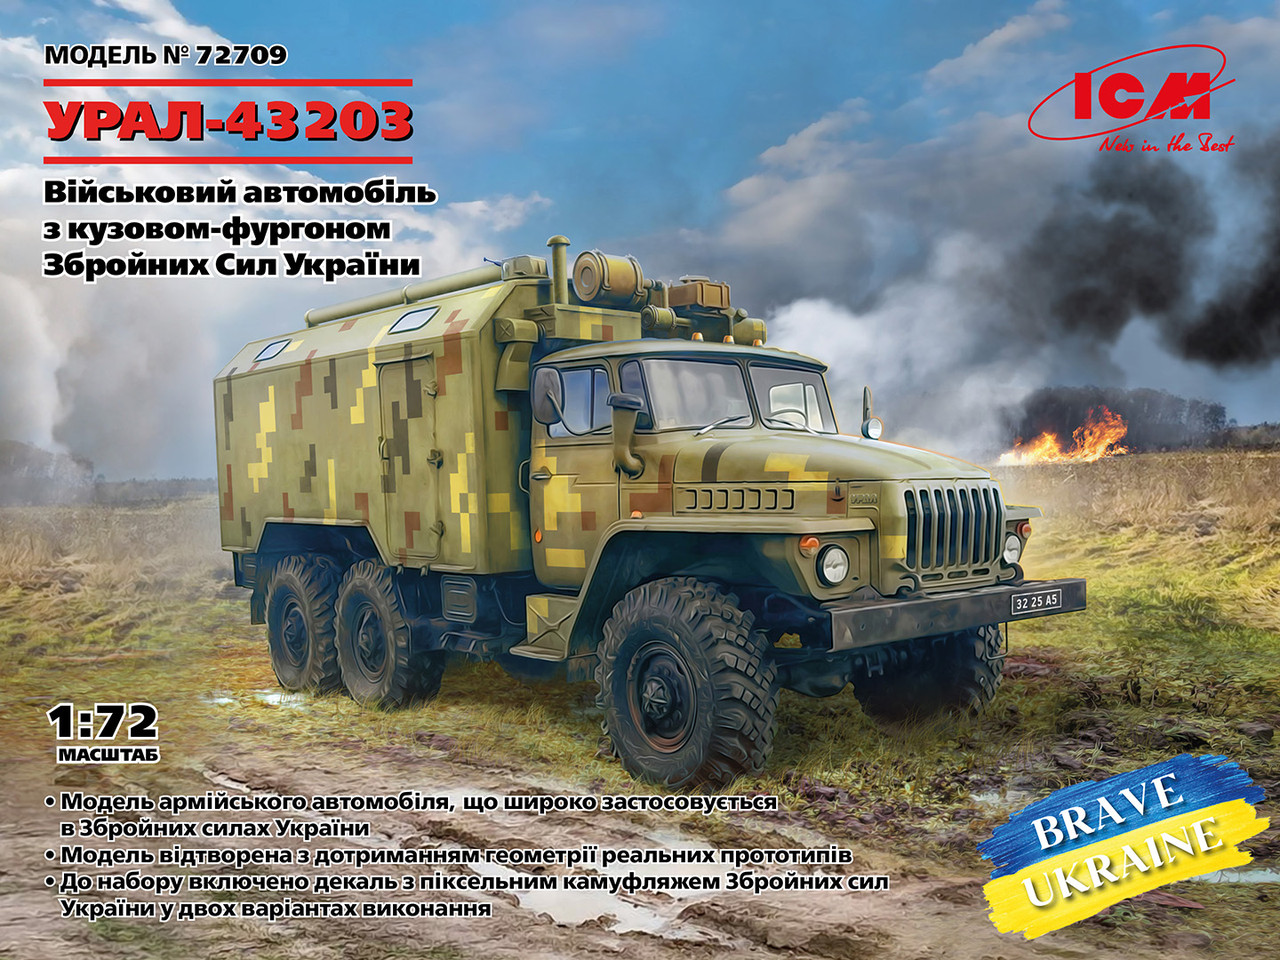 УРАЛ-43203 Військова вантажівка Збройних Сил України. Збірна модель у масштабі 1/72. ICM 72709